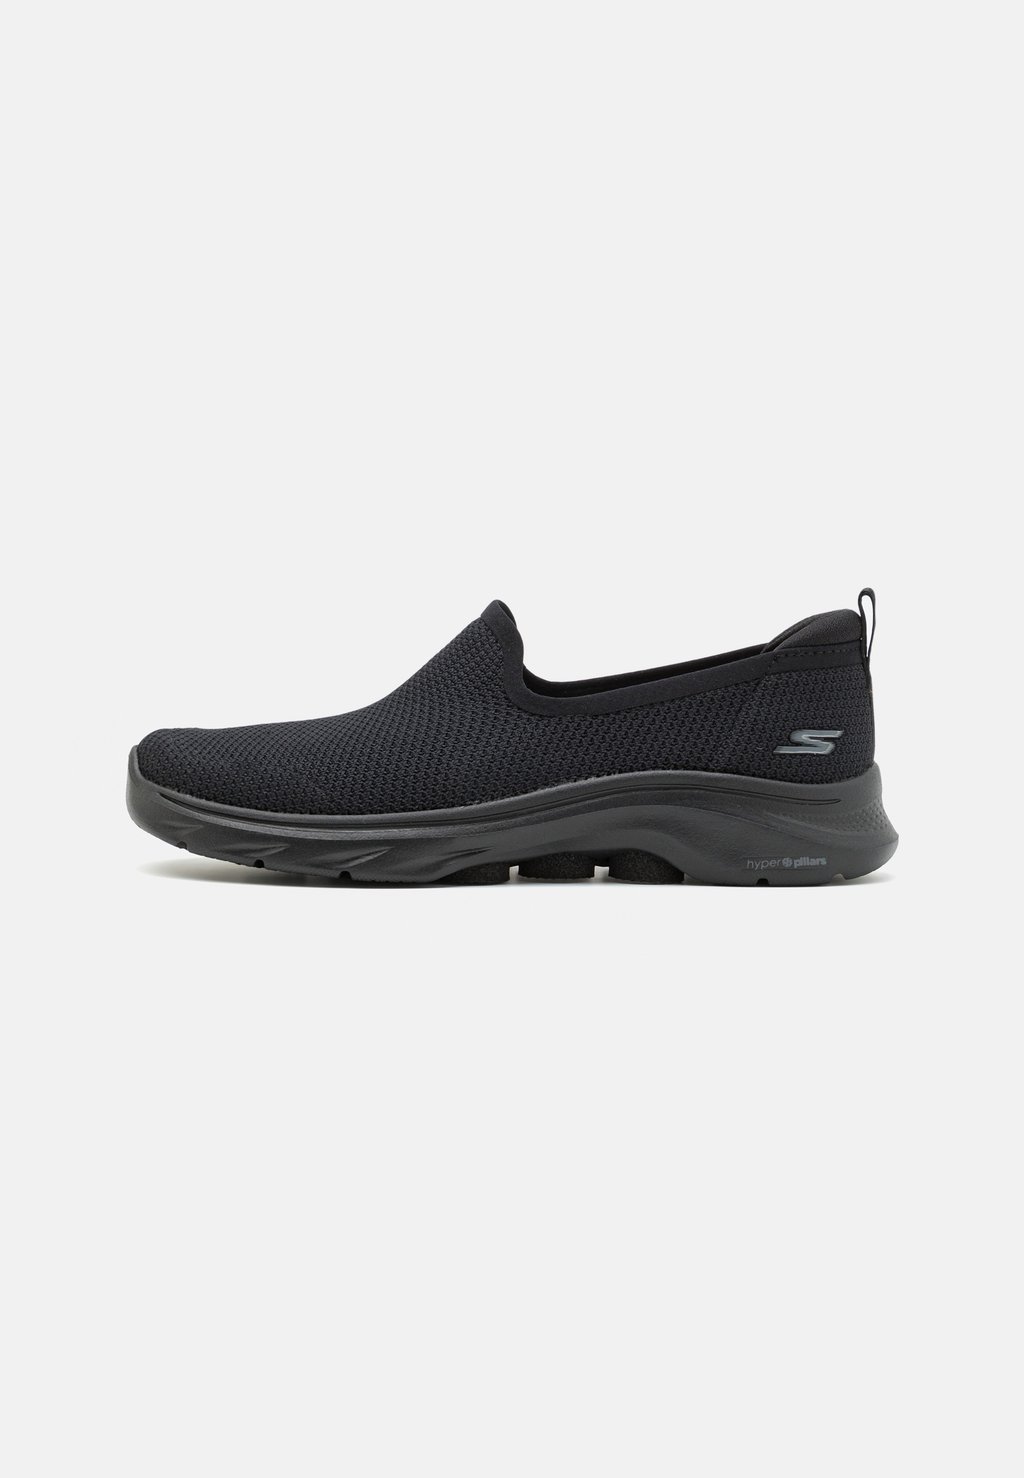 Обувь для ходьбы GO WALK 7 SLIP ON Skechers Performance, цвет black обувь для ходьбы go walk slip on skechers performance цвет black